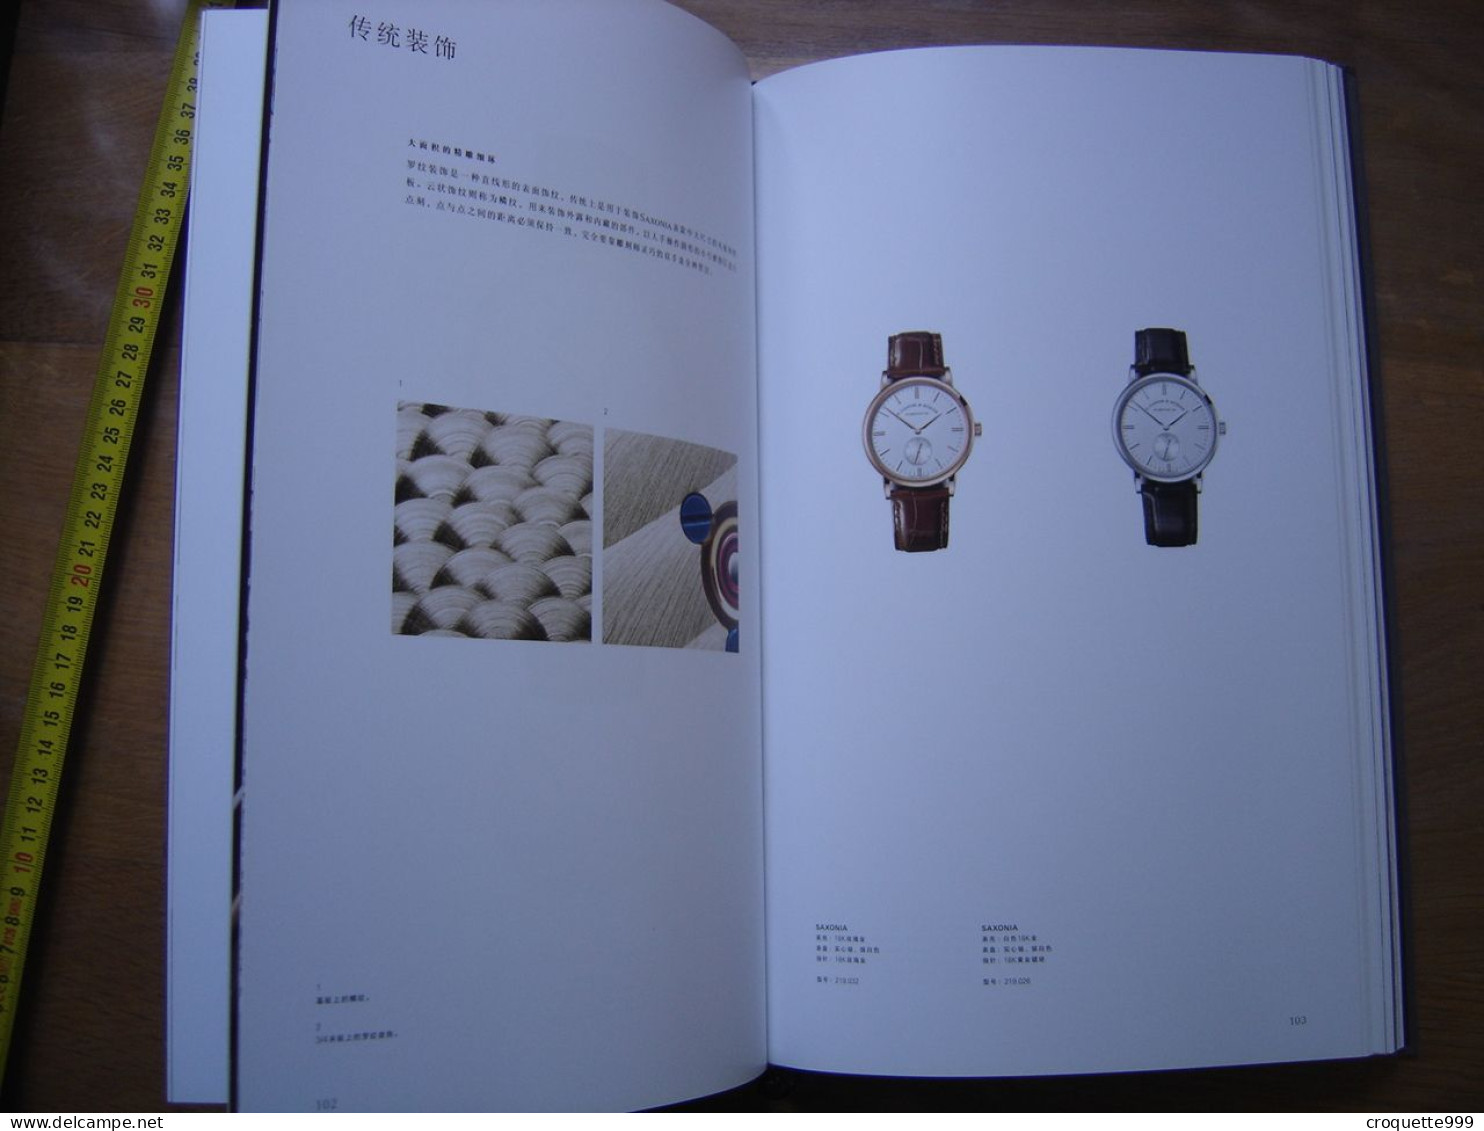 Catalogue Avec Price List Montres LANGE SOHNE 2017 En CHINOIS Artbook Watches - Montres Haut De Gamme